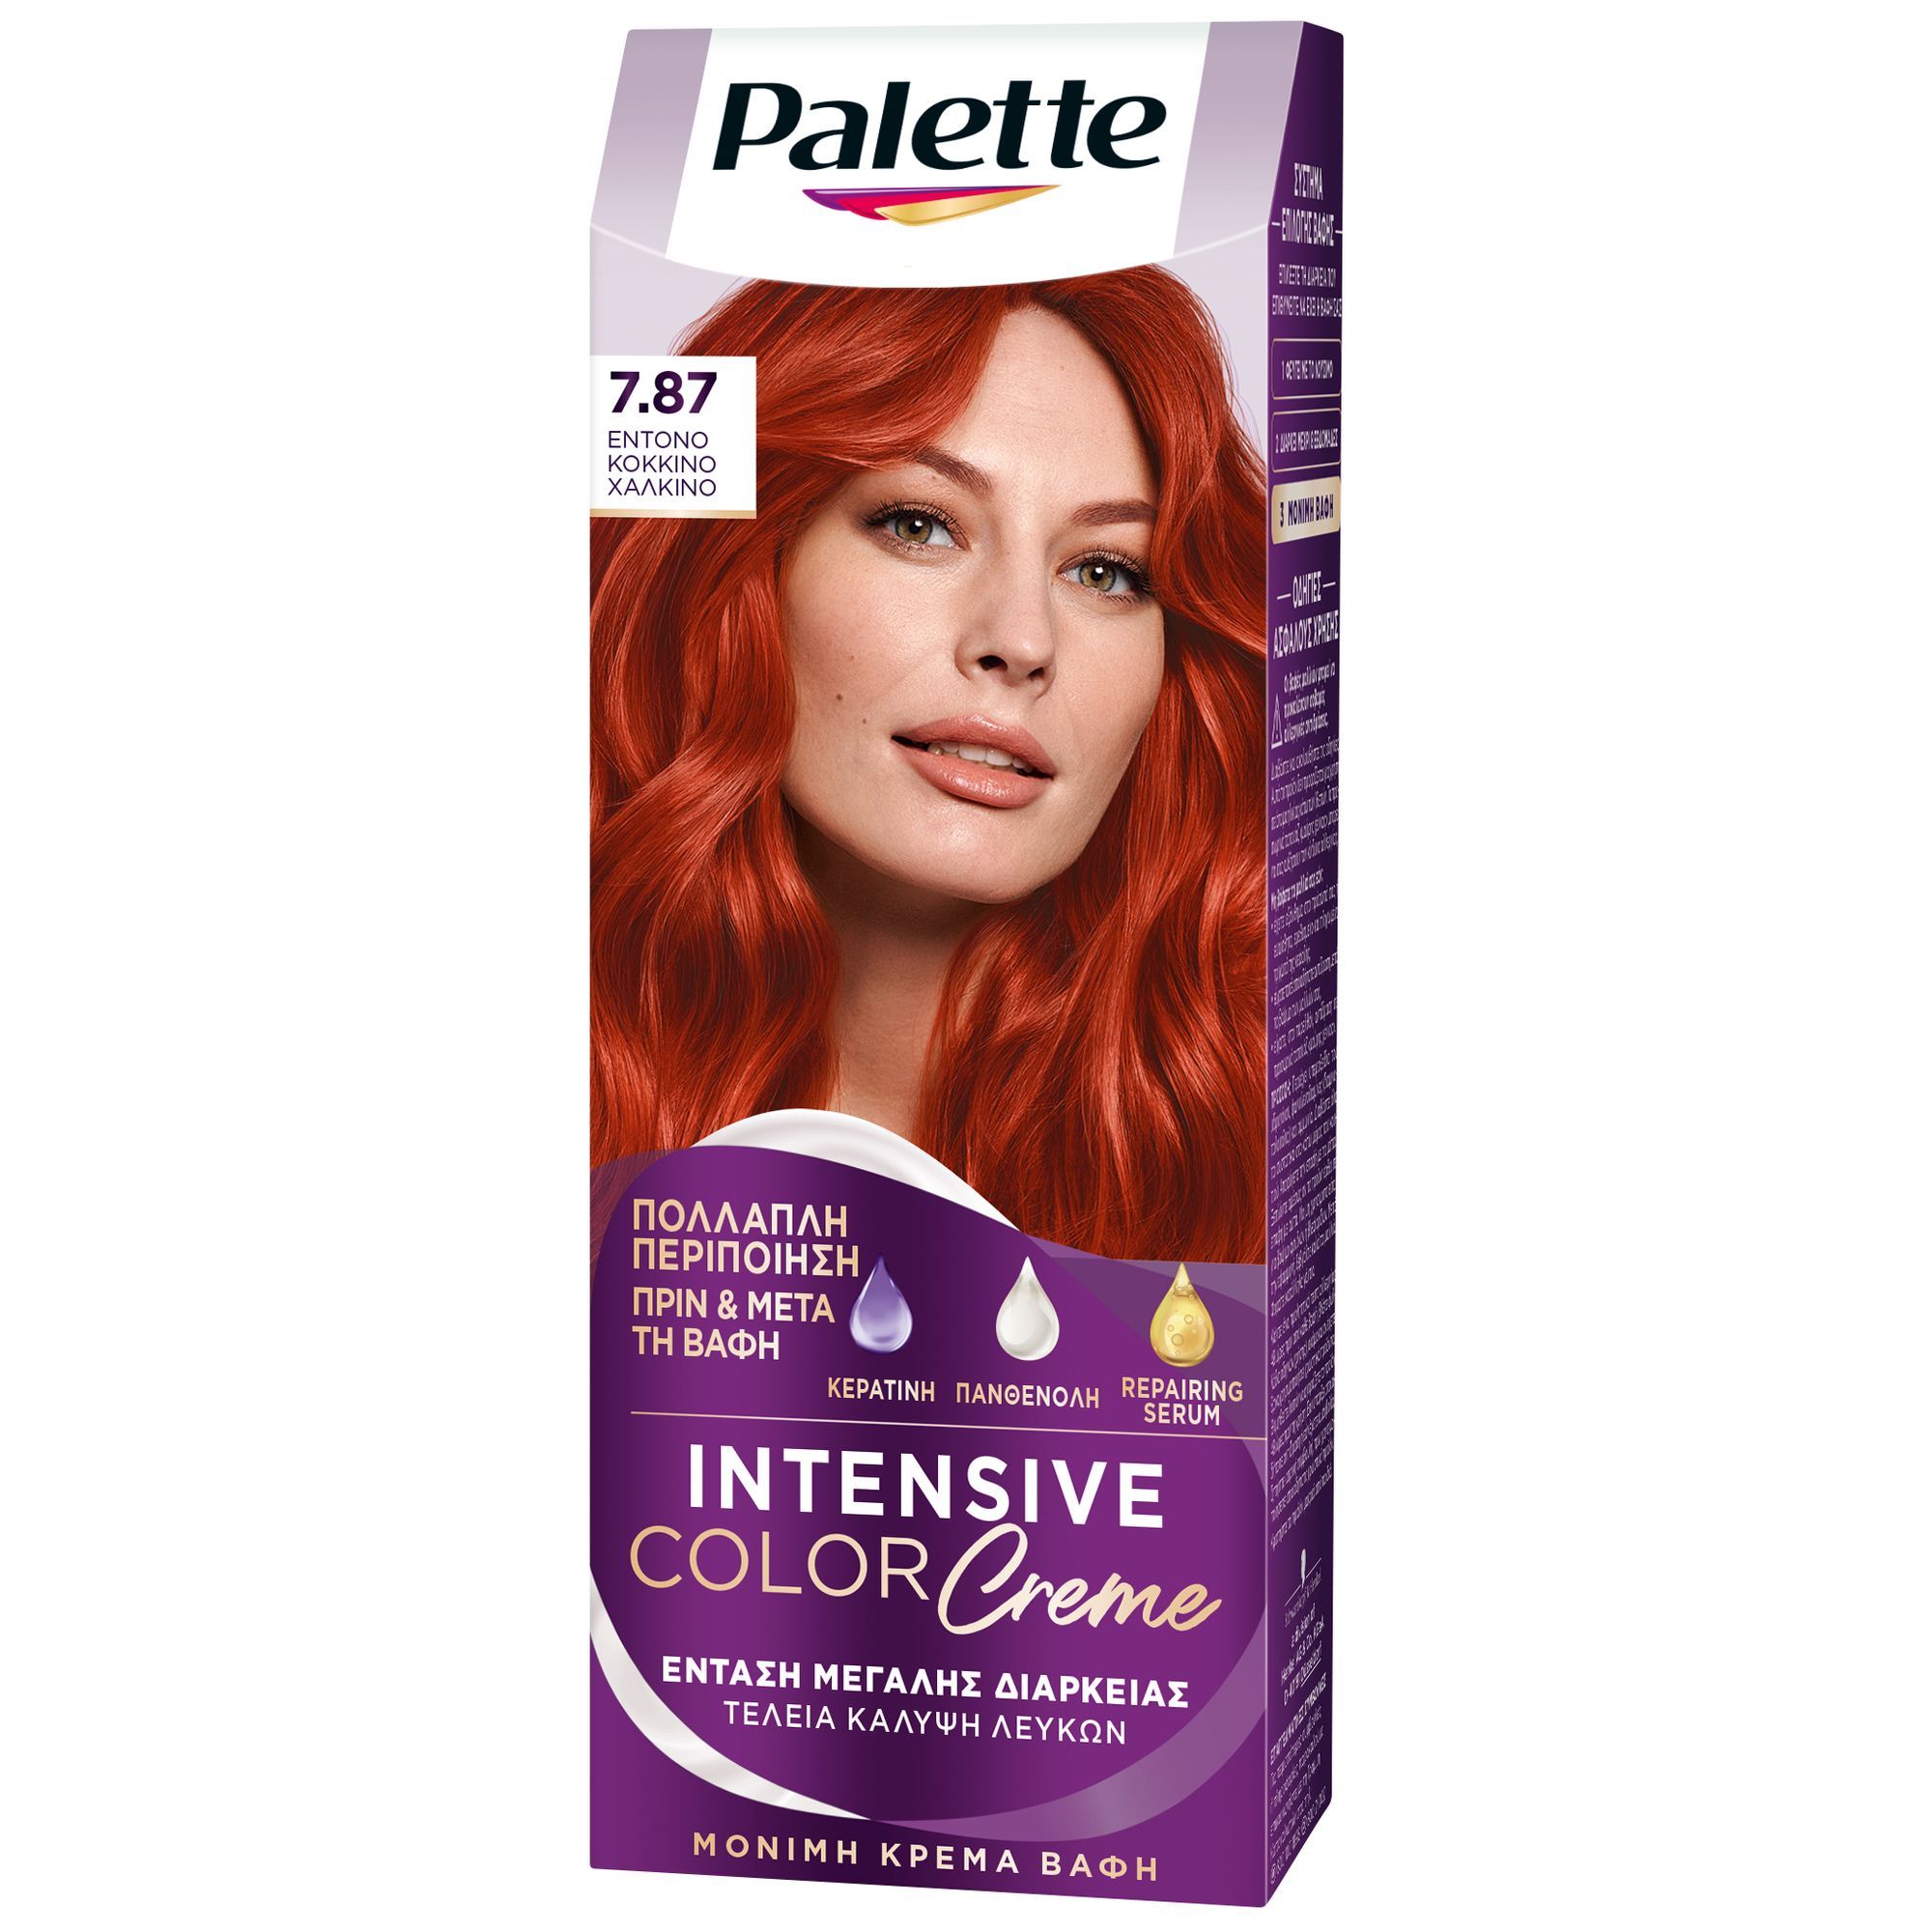 Βαφή Μαλλιών Intensive Color Cream No. 7.87 Έντονο Κόκκινο Χάλκινο Palette (50 ml)